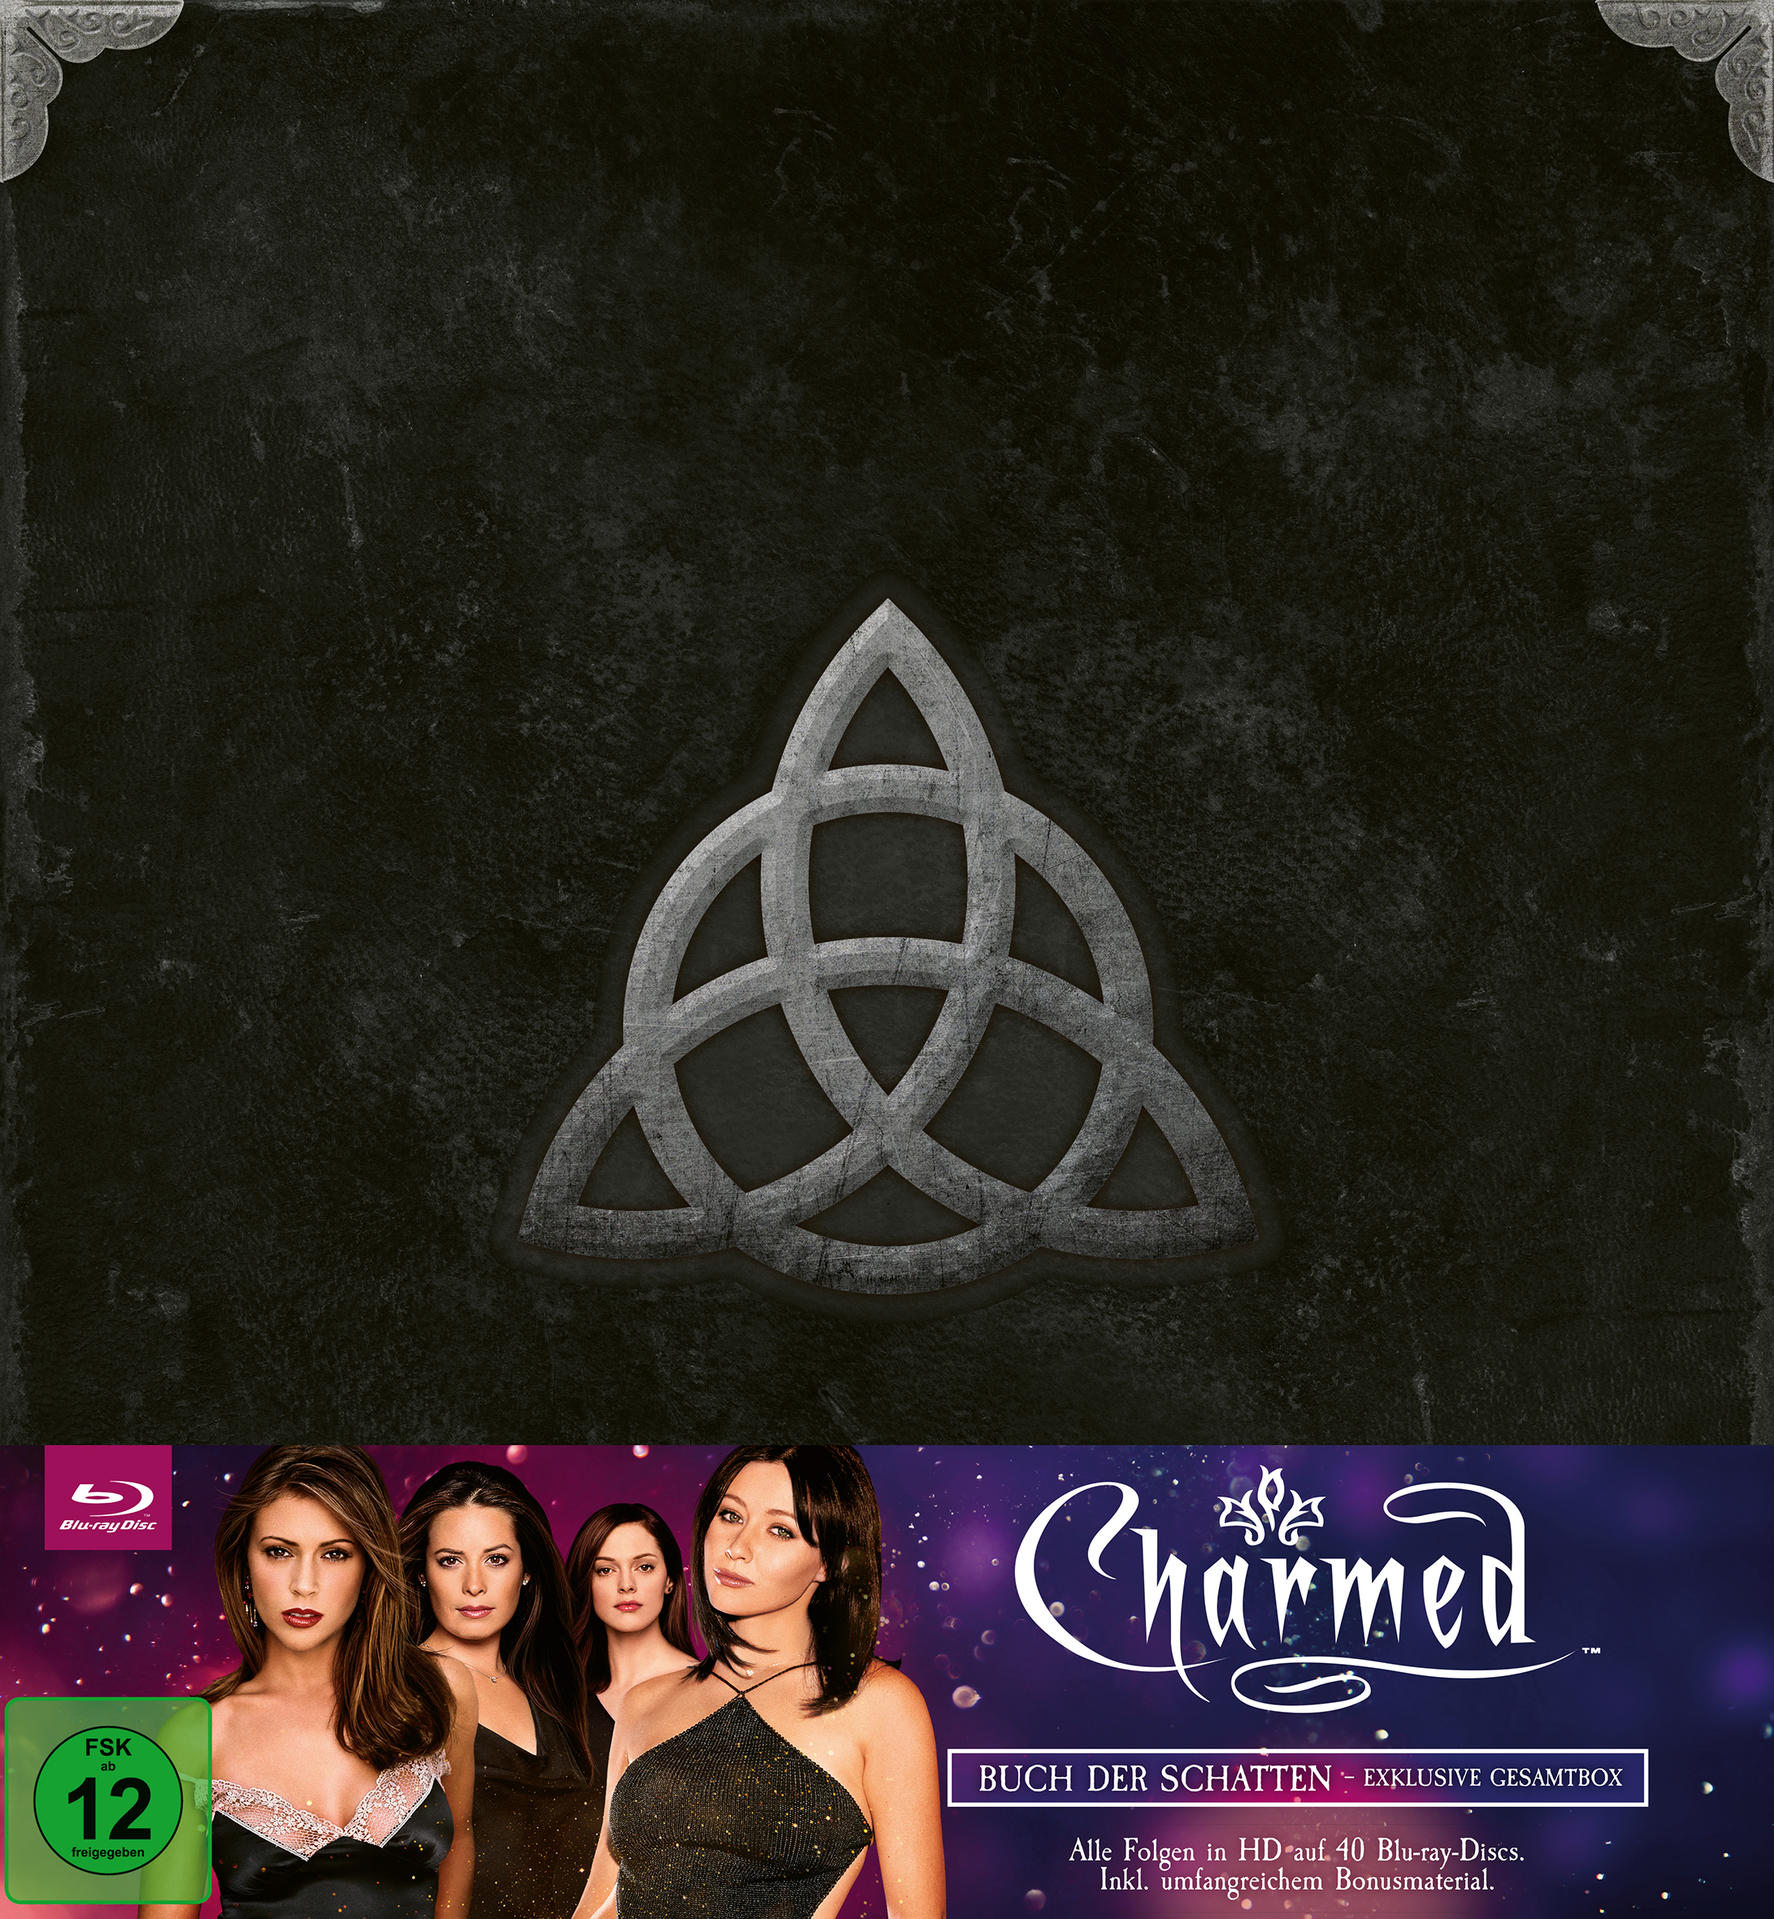 Charmed: Zauberhafte Hexen - Blu-ray Exklusive Schatten Buch der Gesamtbox